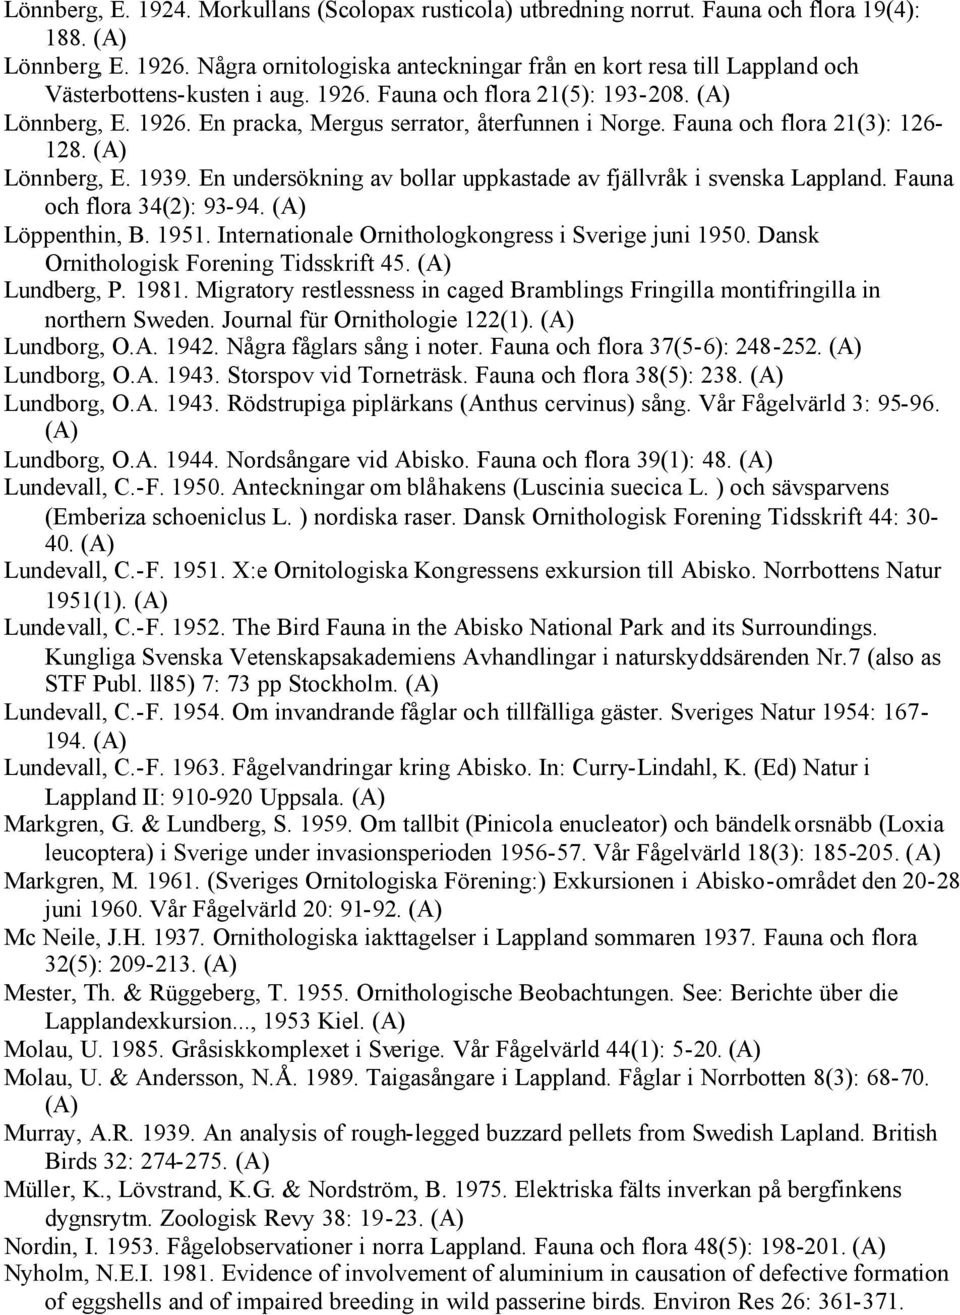 Fauna och flora 21(3): 126-128. Lönnberg, E. 1939. En undersökning av bollar uppkastade av fjällvråk i svenska Lappland. Fauna och flora 34(2): 93-94. Löppenthin, B. 1951.